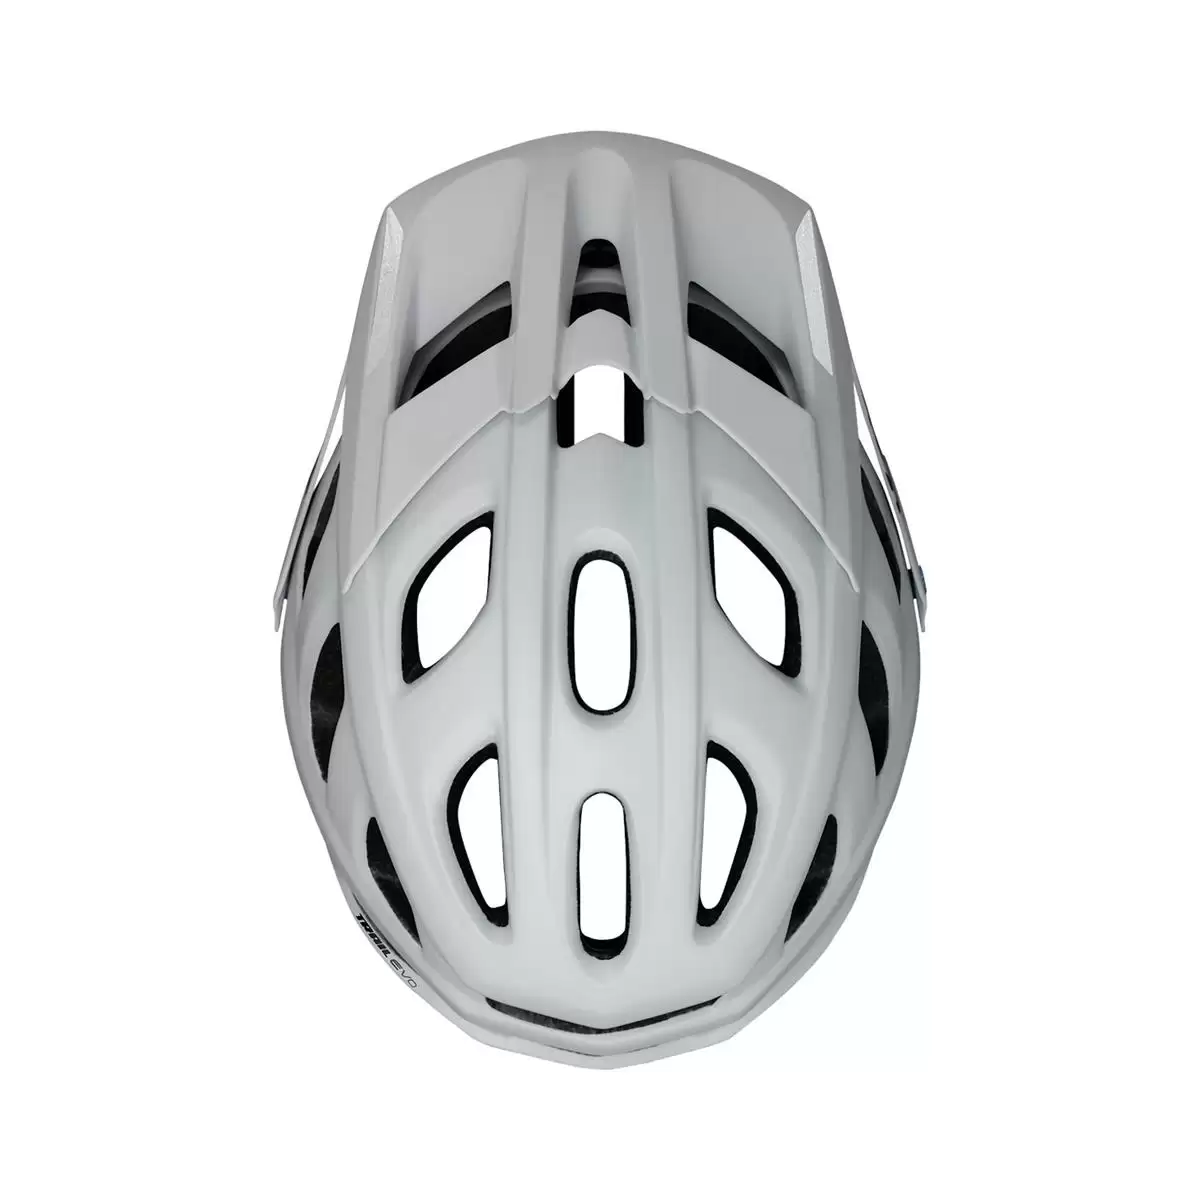 Henduro Helmet Trail Evo E-Bike Edition White Size XS/S (49-54cm) #2